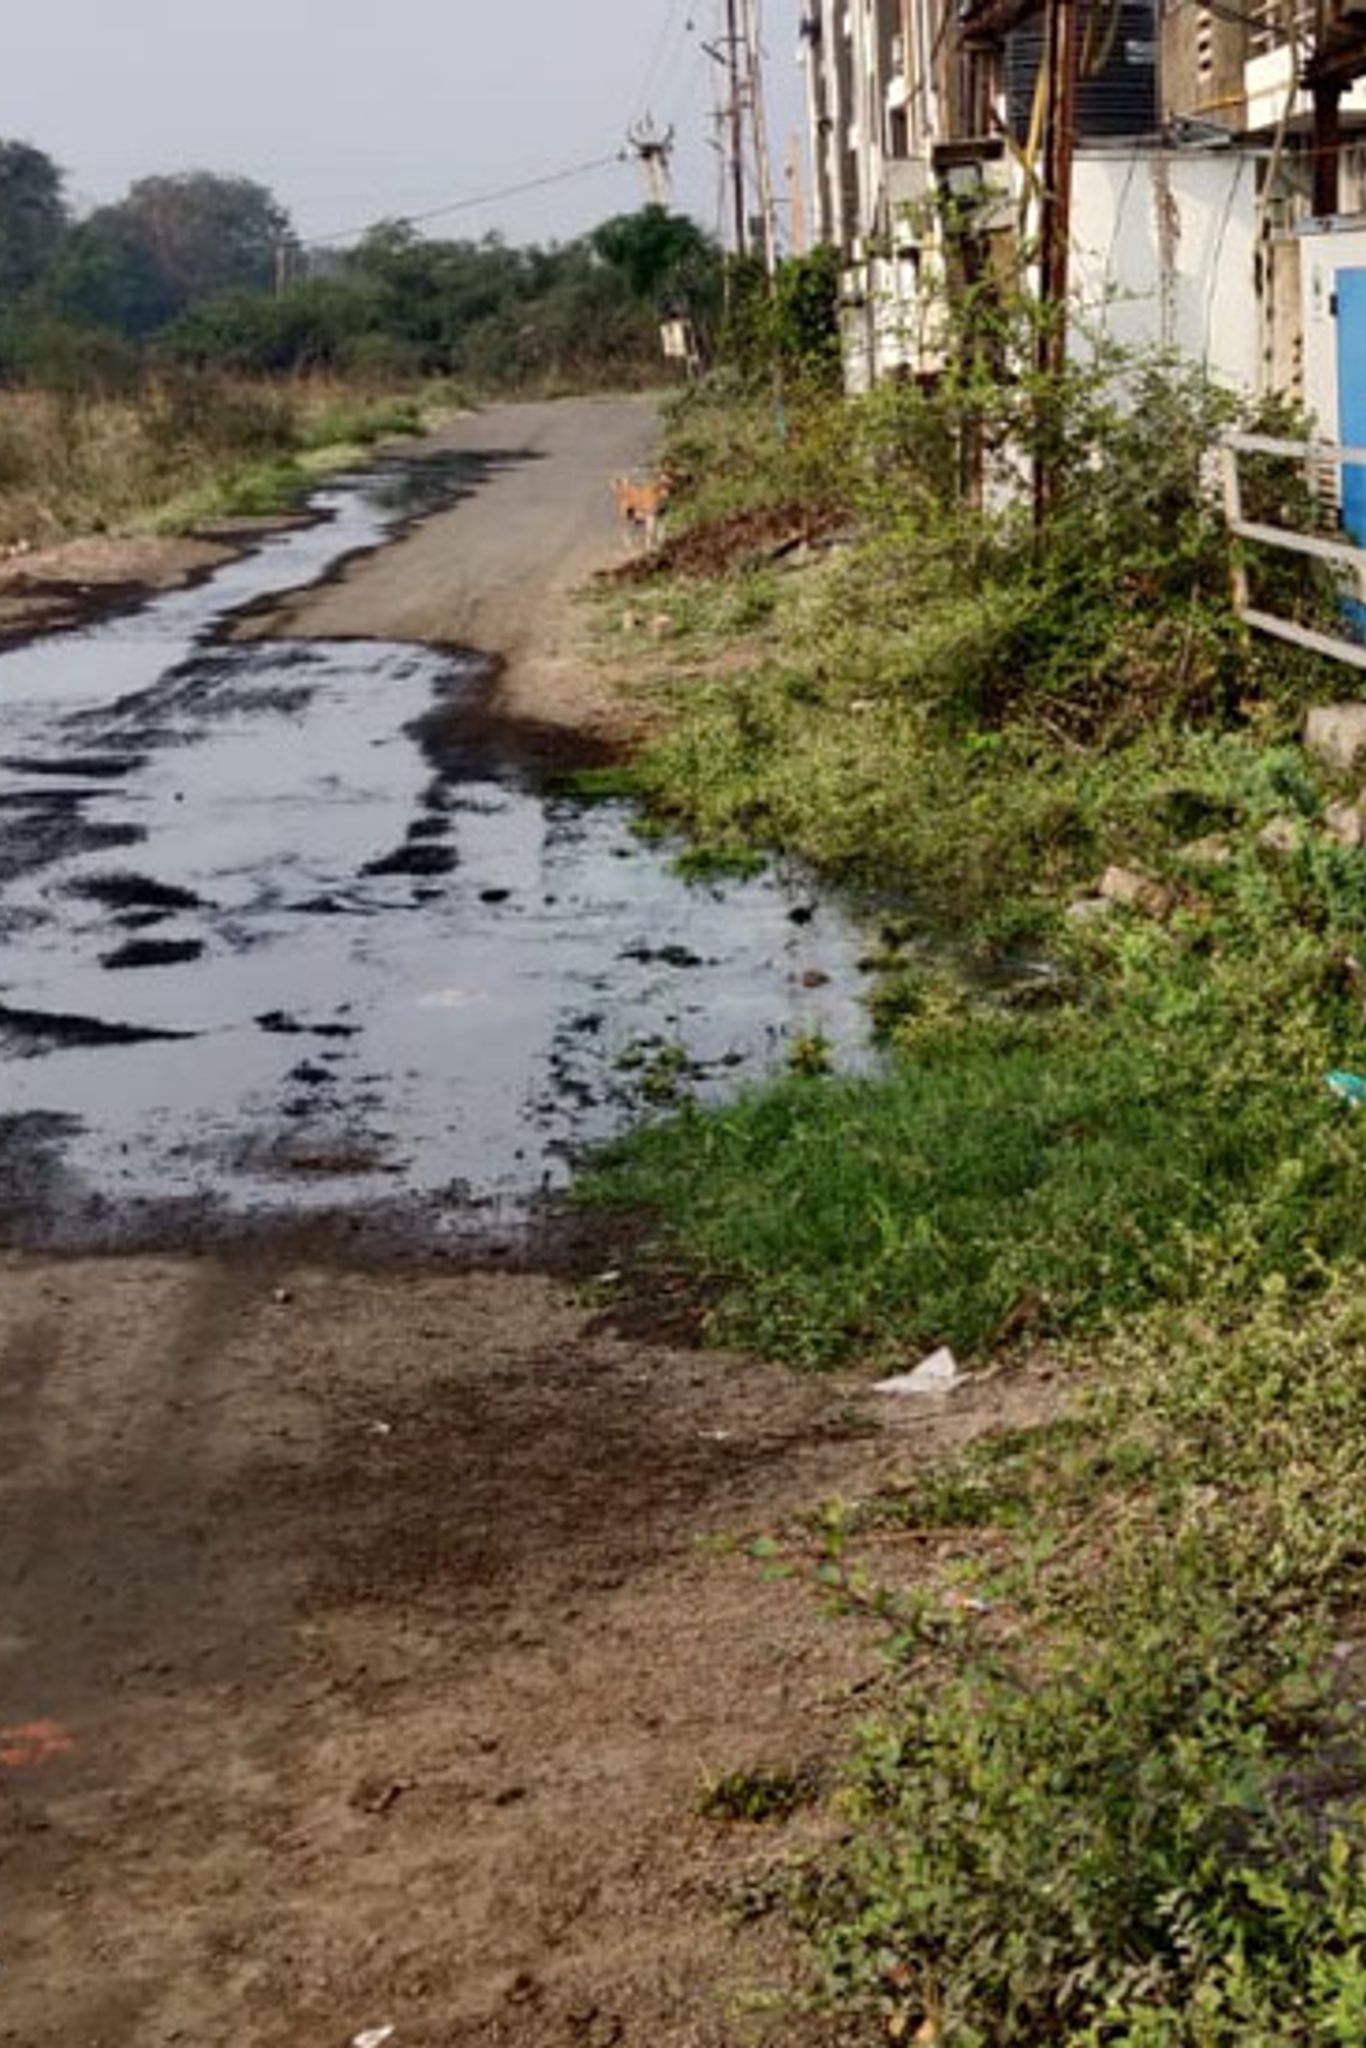 પ્રતીકાત્મક તસવીર:સંતરામપુરના મોટી સરસણ ગામમાં વણકરવાસમાં ગંદુ પાણી ઉભરાતા રહીશો પરેશાન